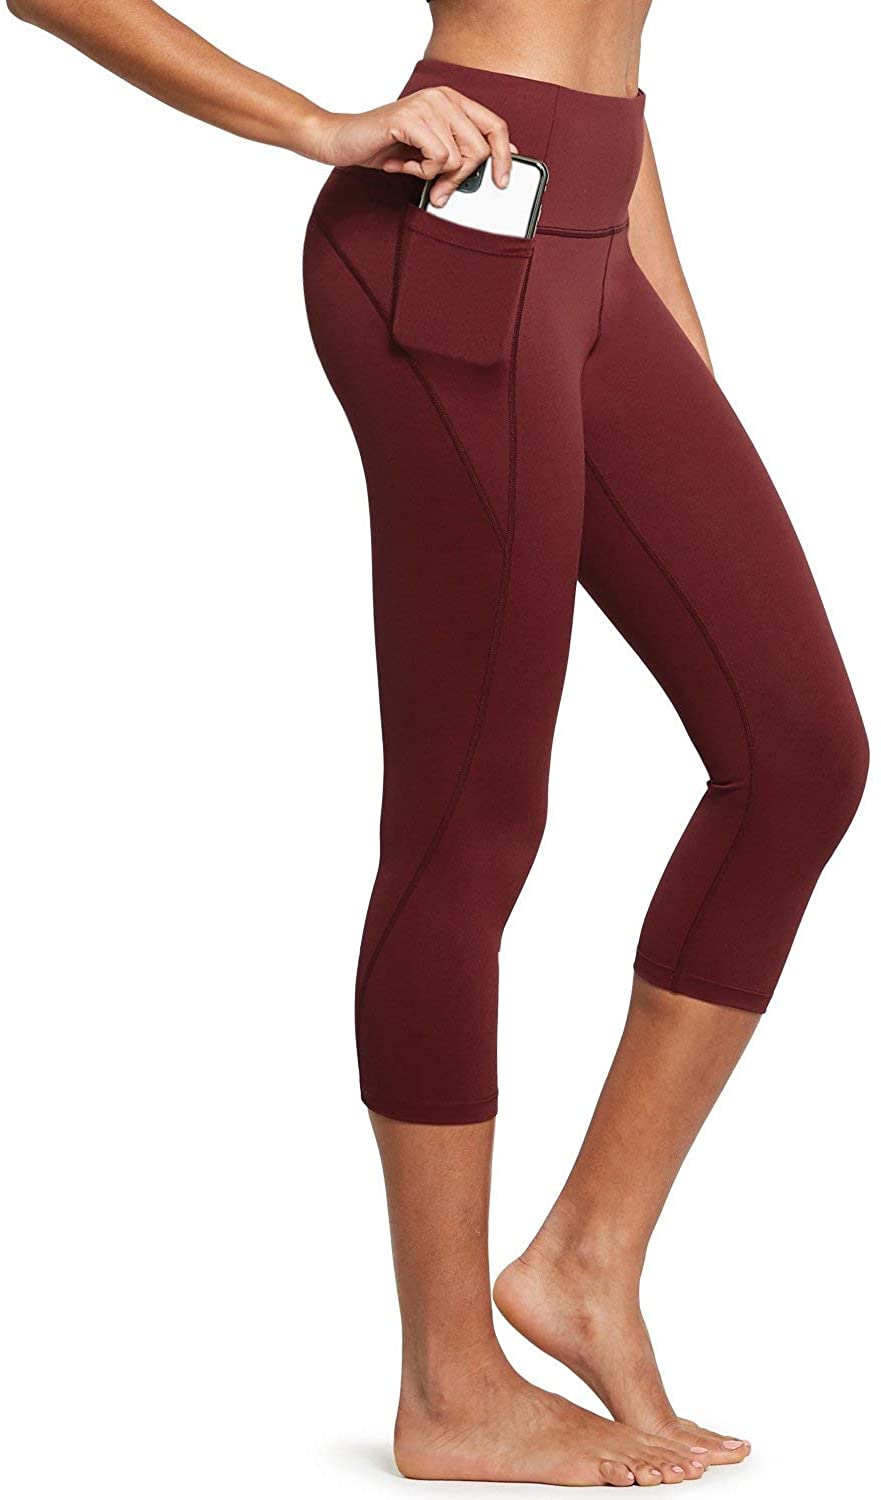 leggings with pockets for women capri 2 pack : BALEAF Women's High Waisted  Yoga Capris w Side